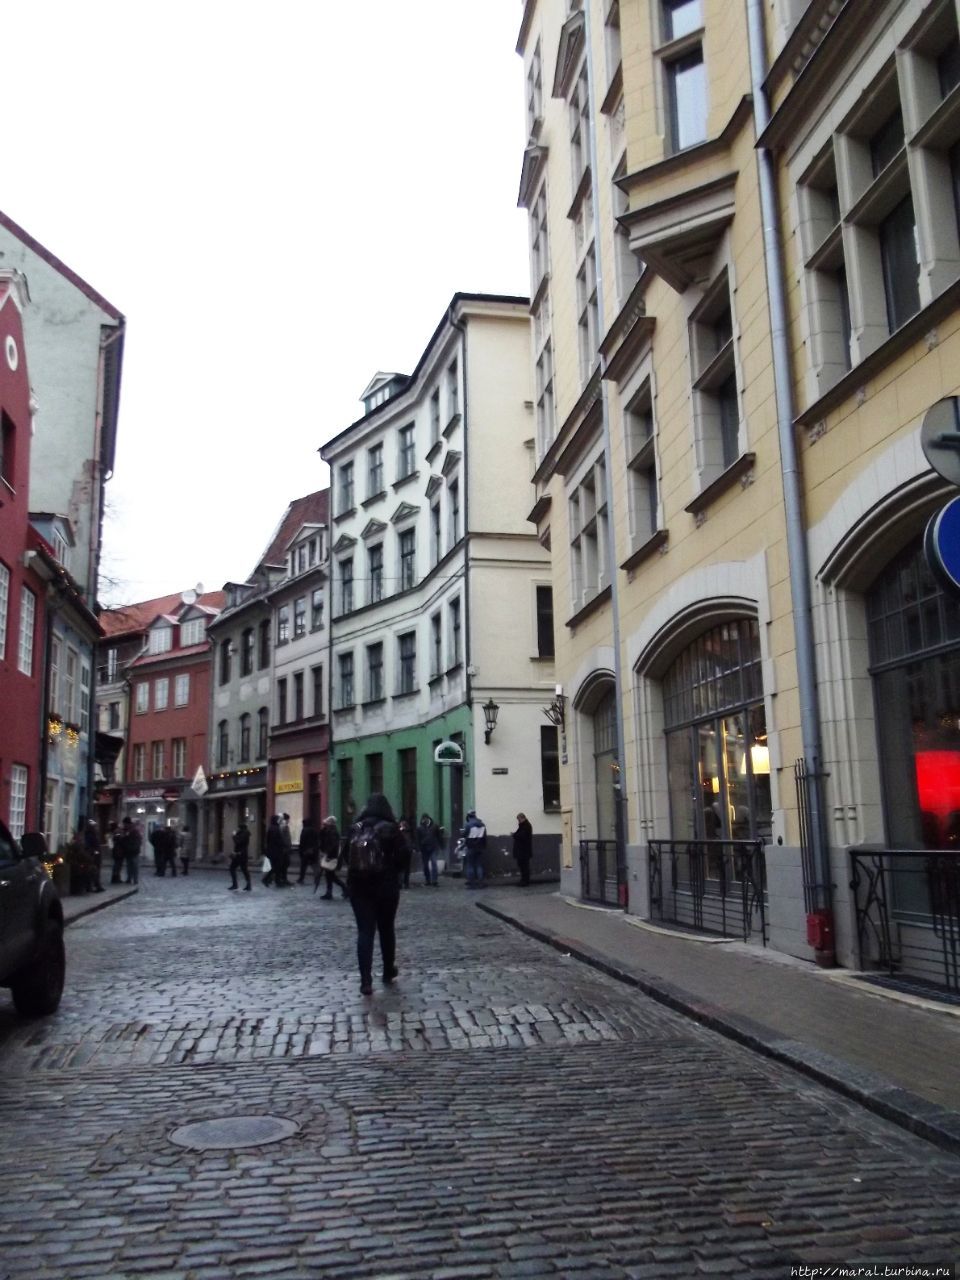 Улицу Яуниела в Риге называют Кинематографической улицой Рига, Латвия